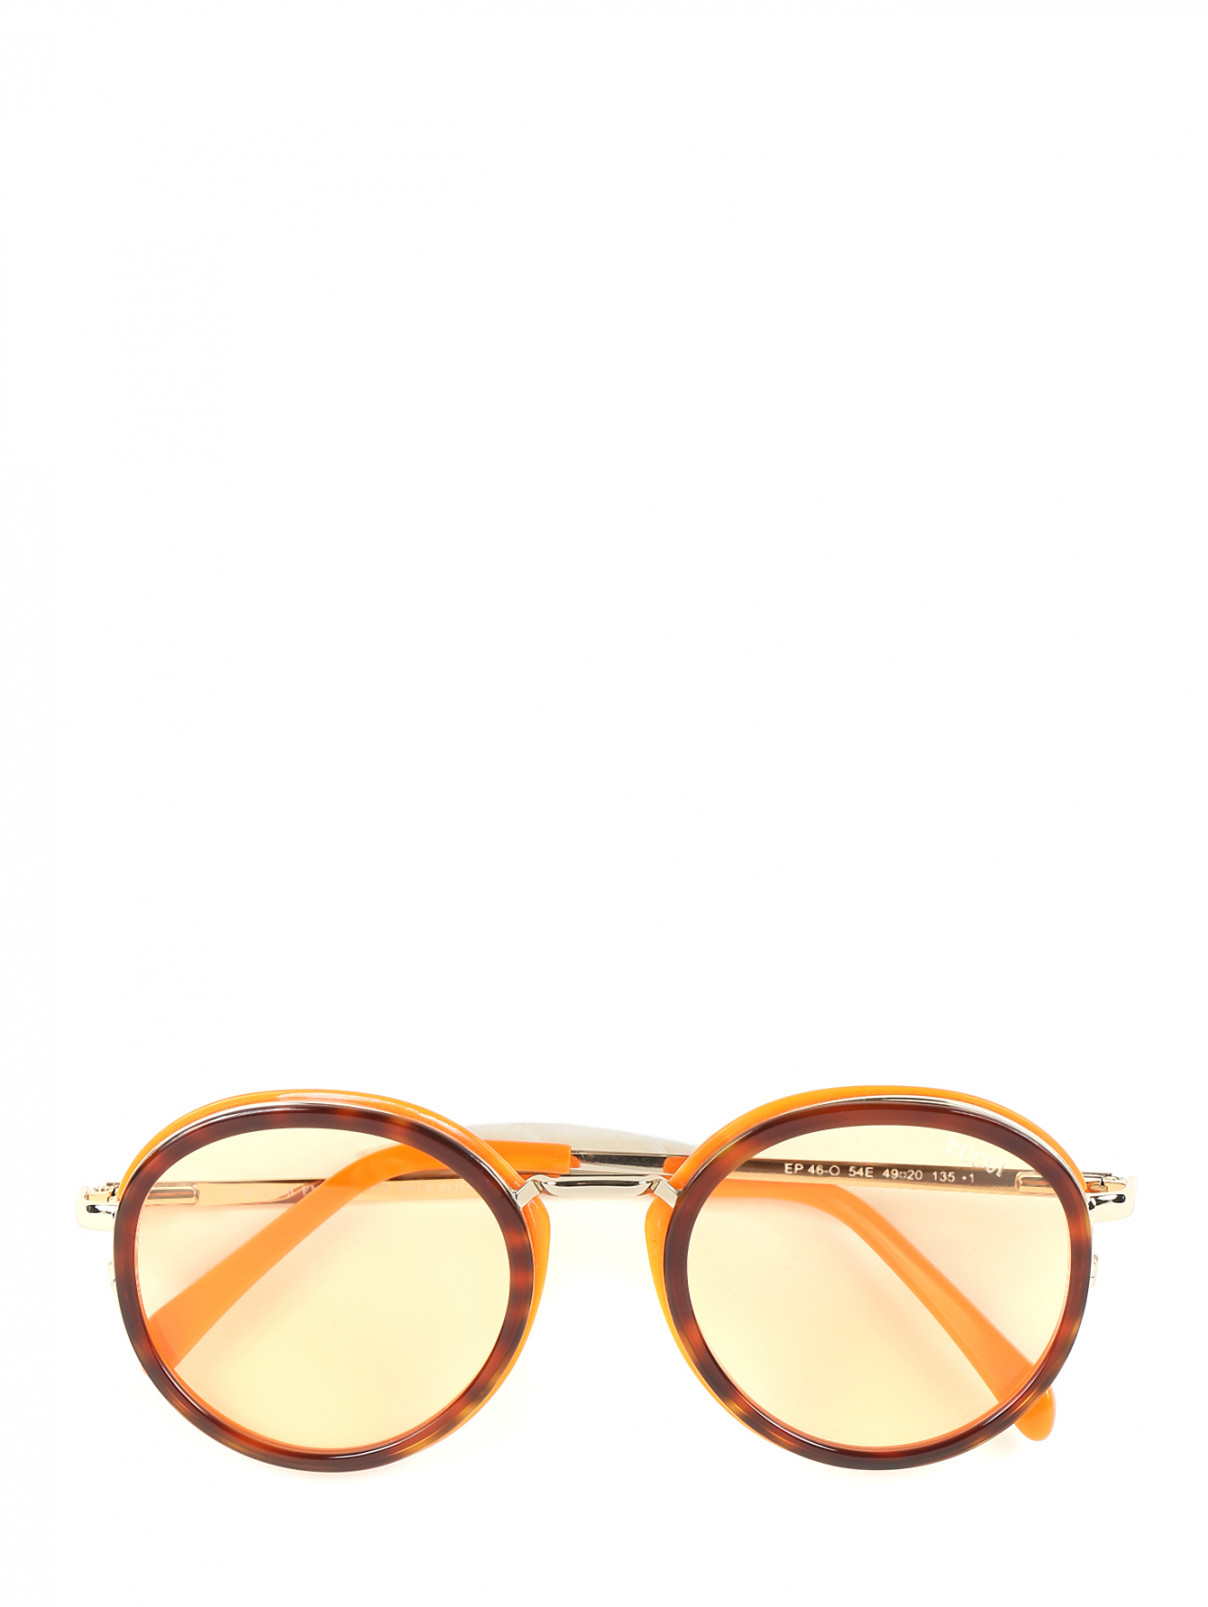 Солнцезащитные очки в оправе из пластика и металла Emilio Pucci  –  Общий вид  – Цвет:  Мультиколор